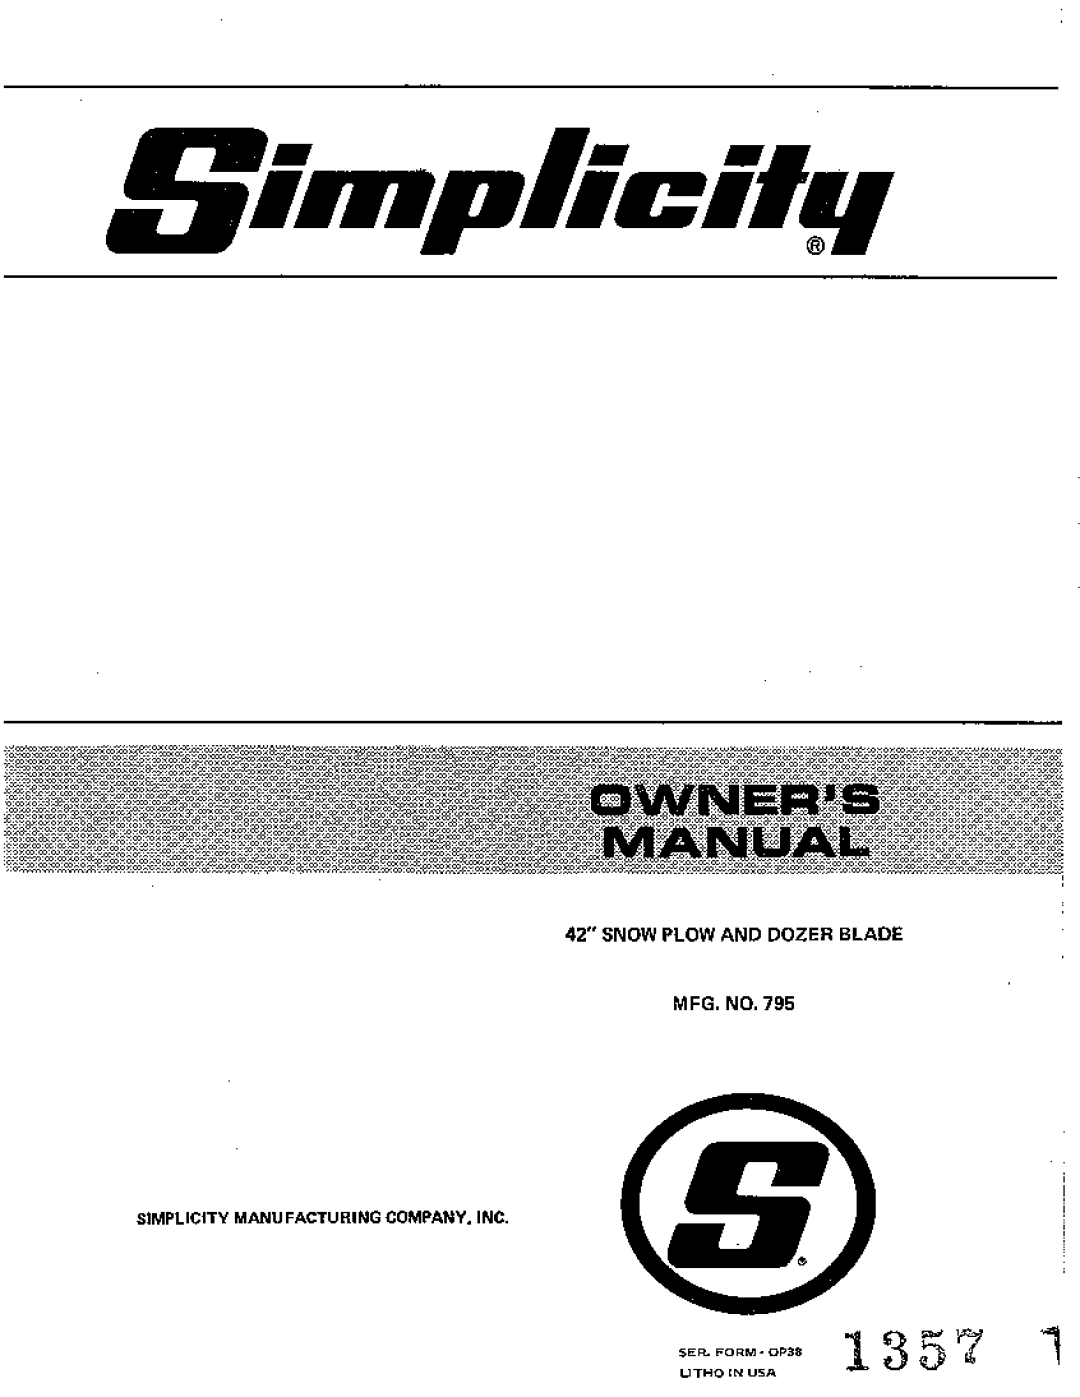 Simplicity 795 manual 